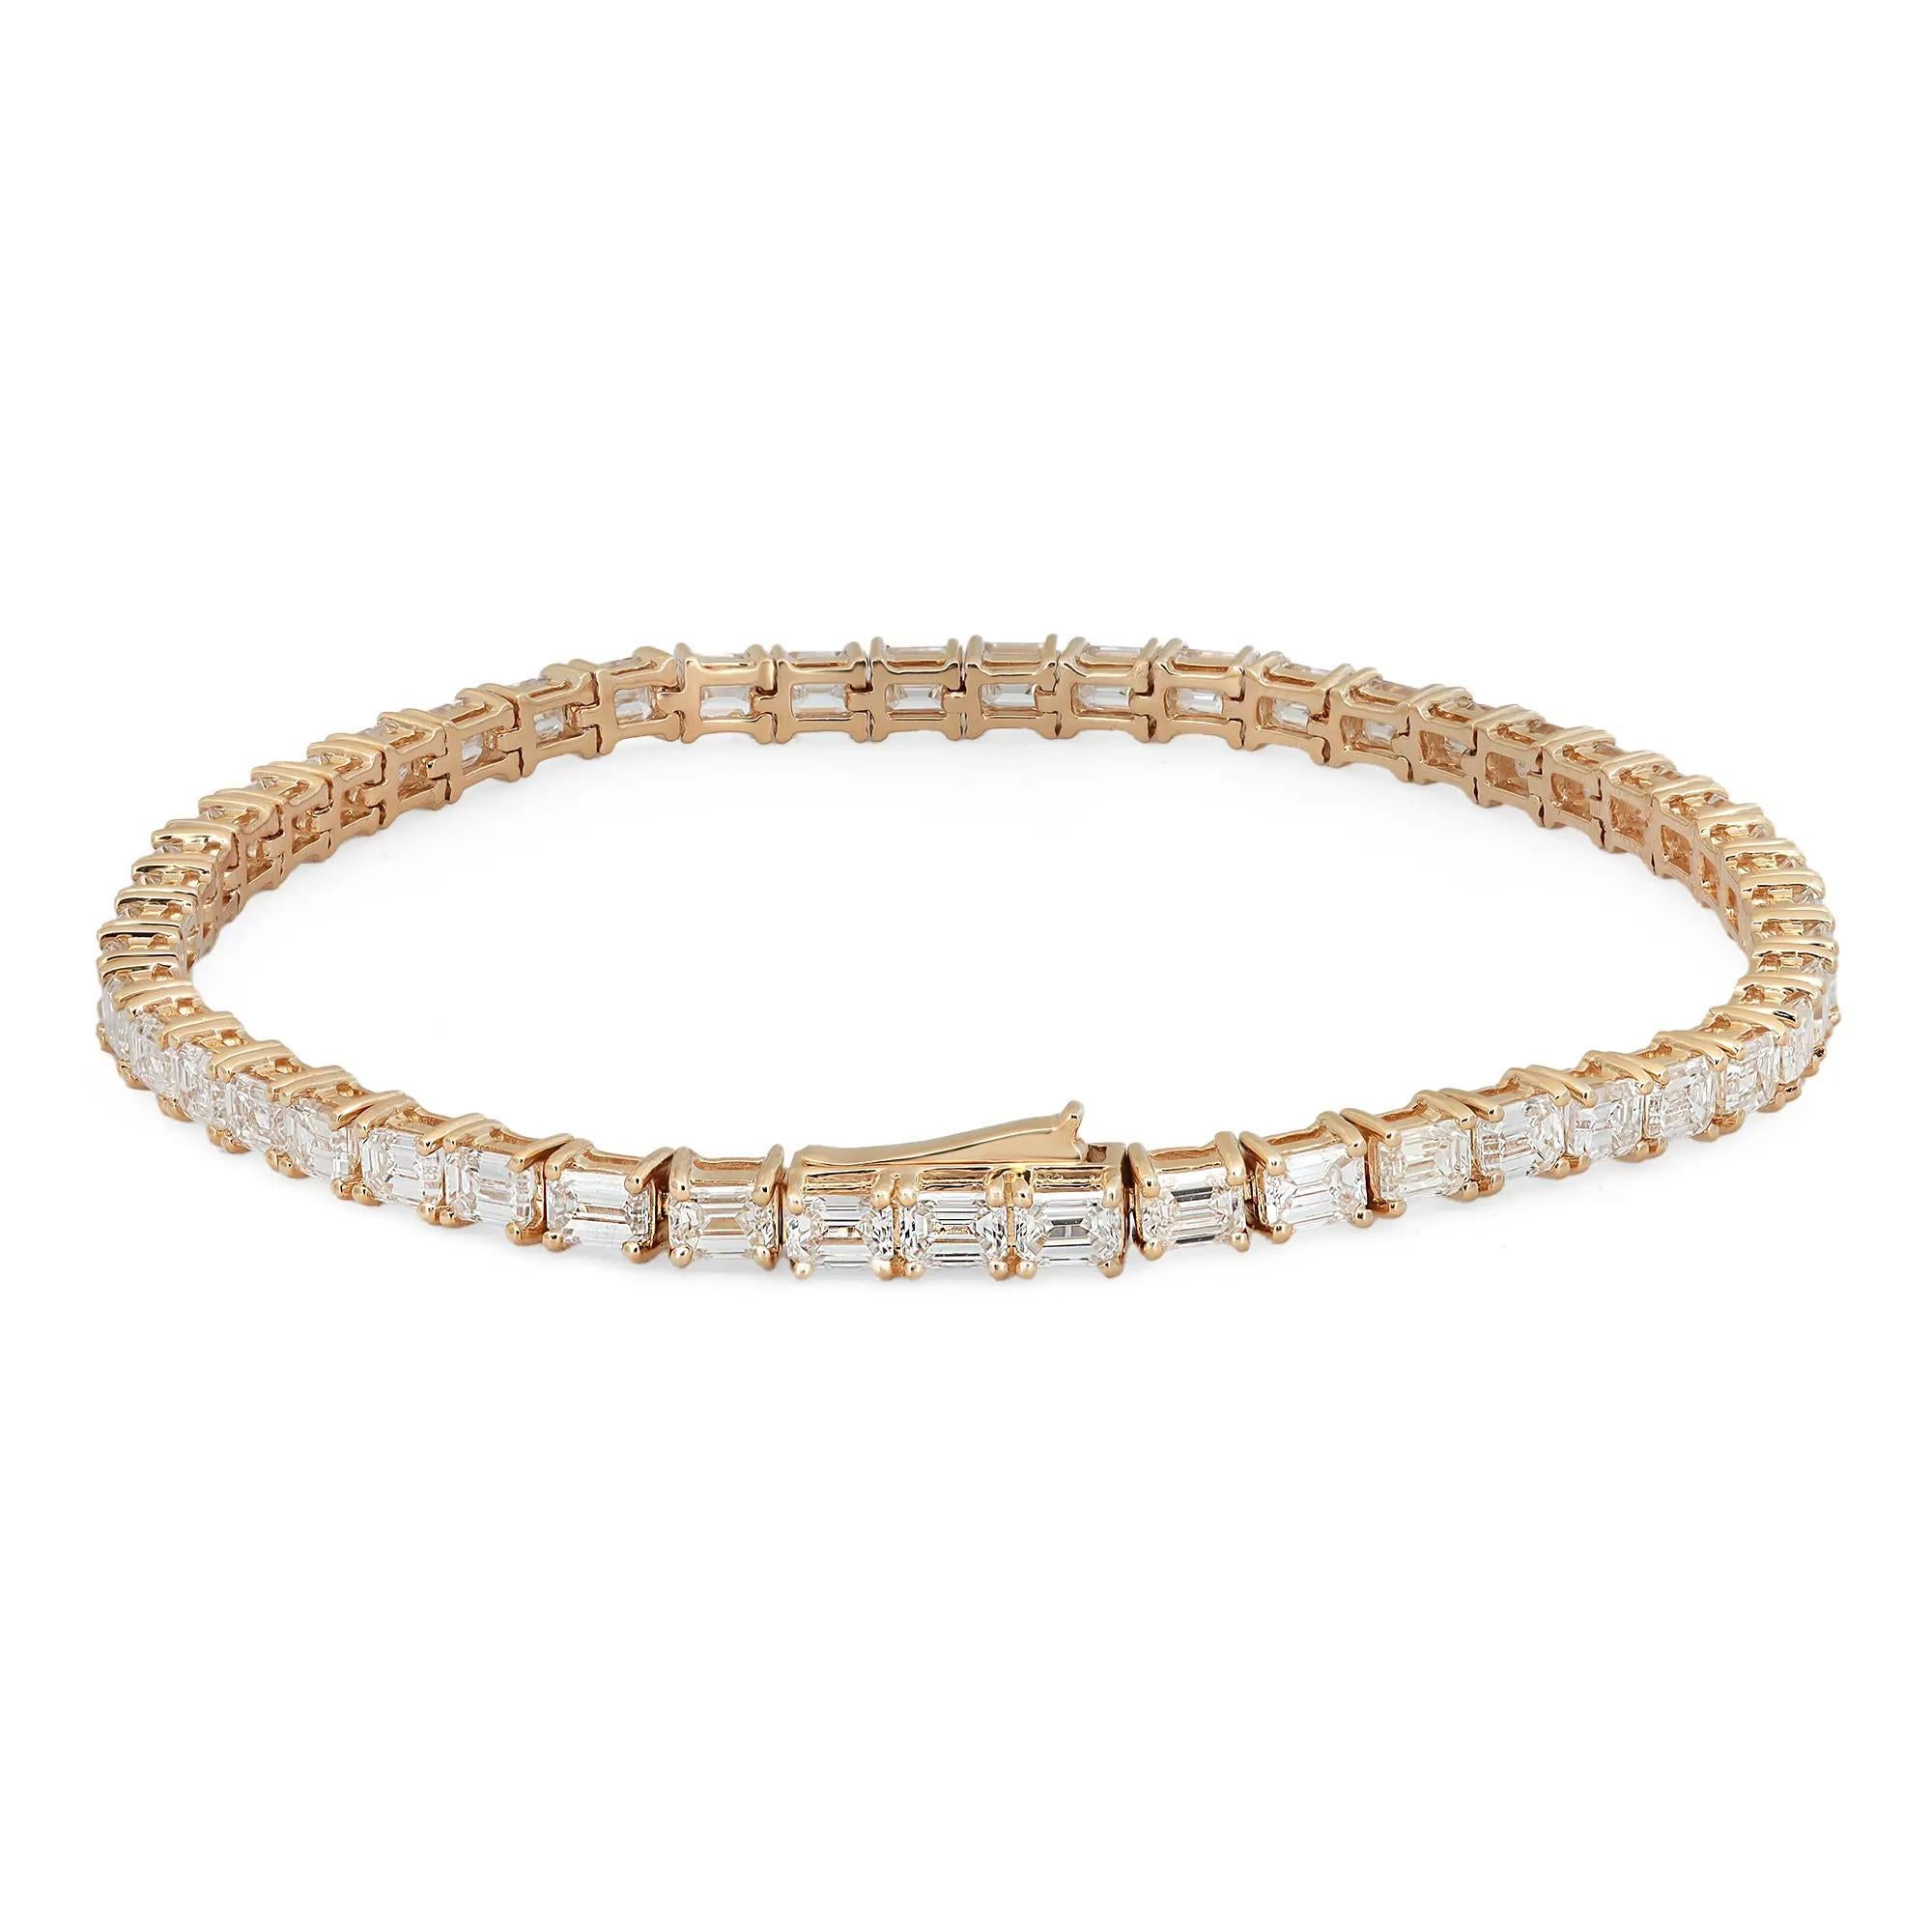 Nous vous présentons notre superbe bracelet de tennis est-ouest en diamant taille émeraude de 7,00 carats, une pièce audacieuse et captivante d'un luxe intemporel fabriquée en or jaune 18 carats radieux. La pièce maîtresse de ce bracelet est